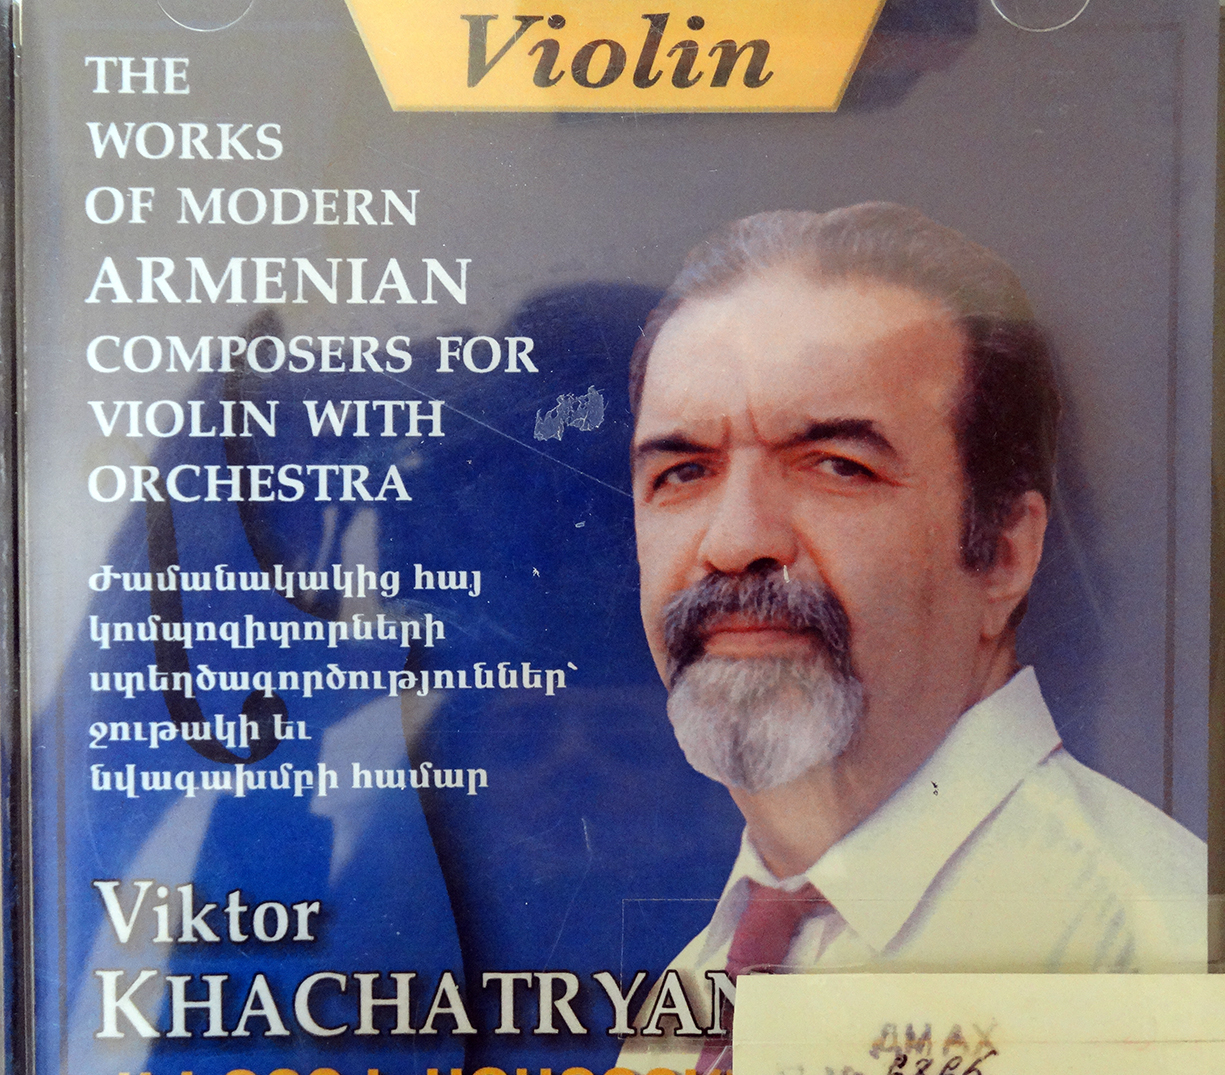 Ժամանակակից հայ կոմպոզիտորների ստեղծագործություններ ջութակի և նվագախմբի համար